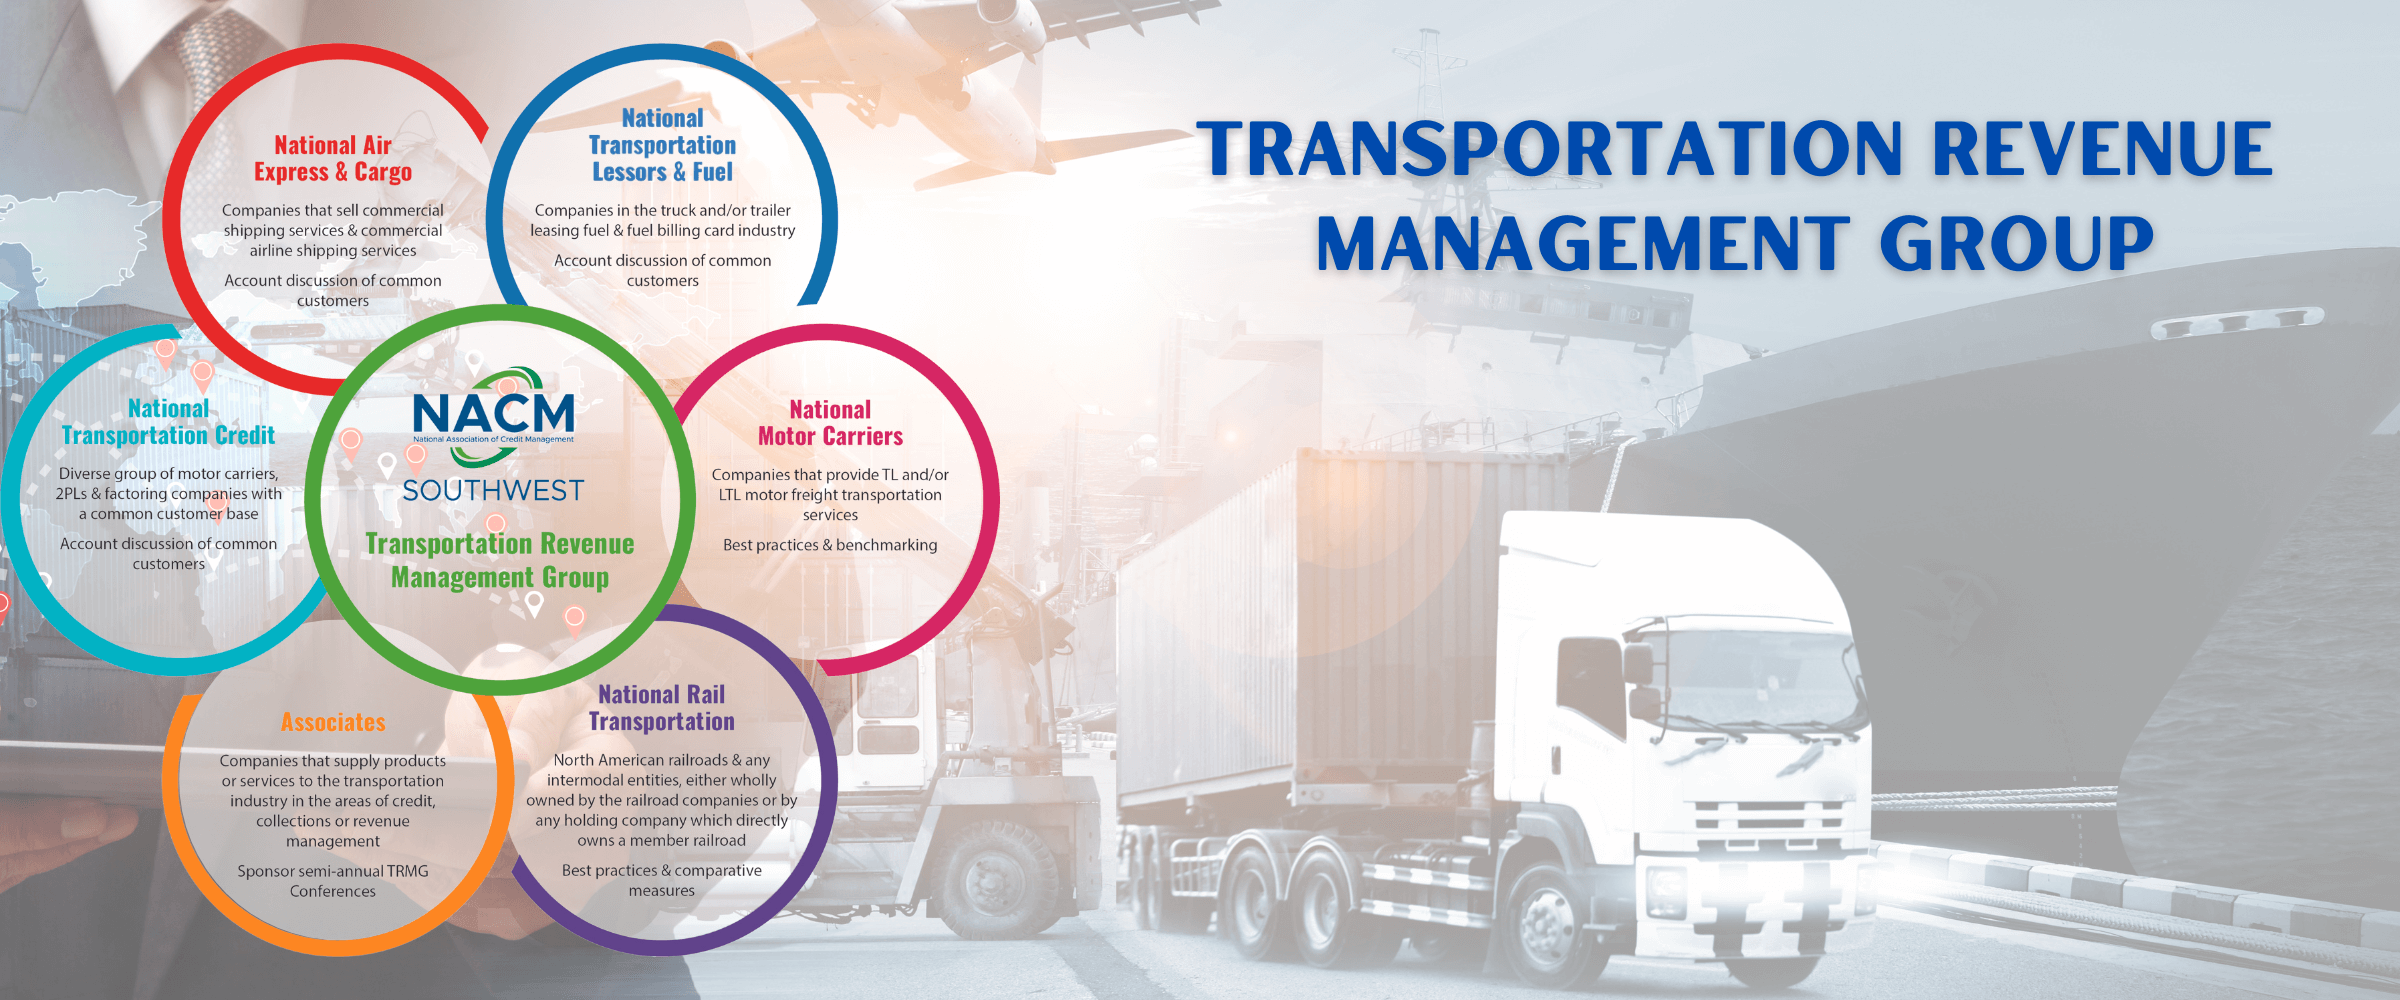 Transportation Revenue Management Group